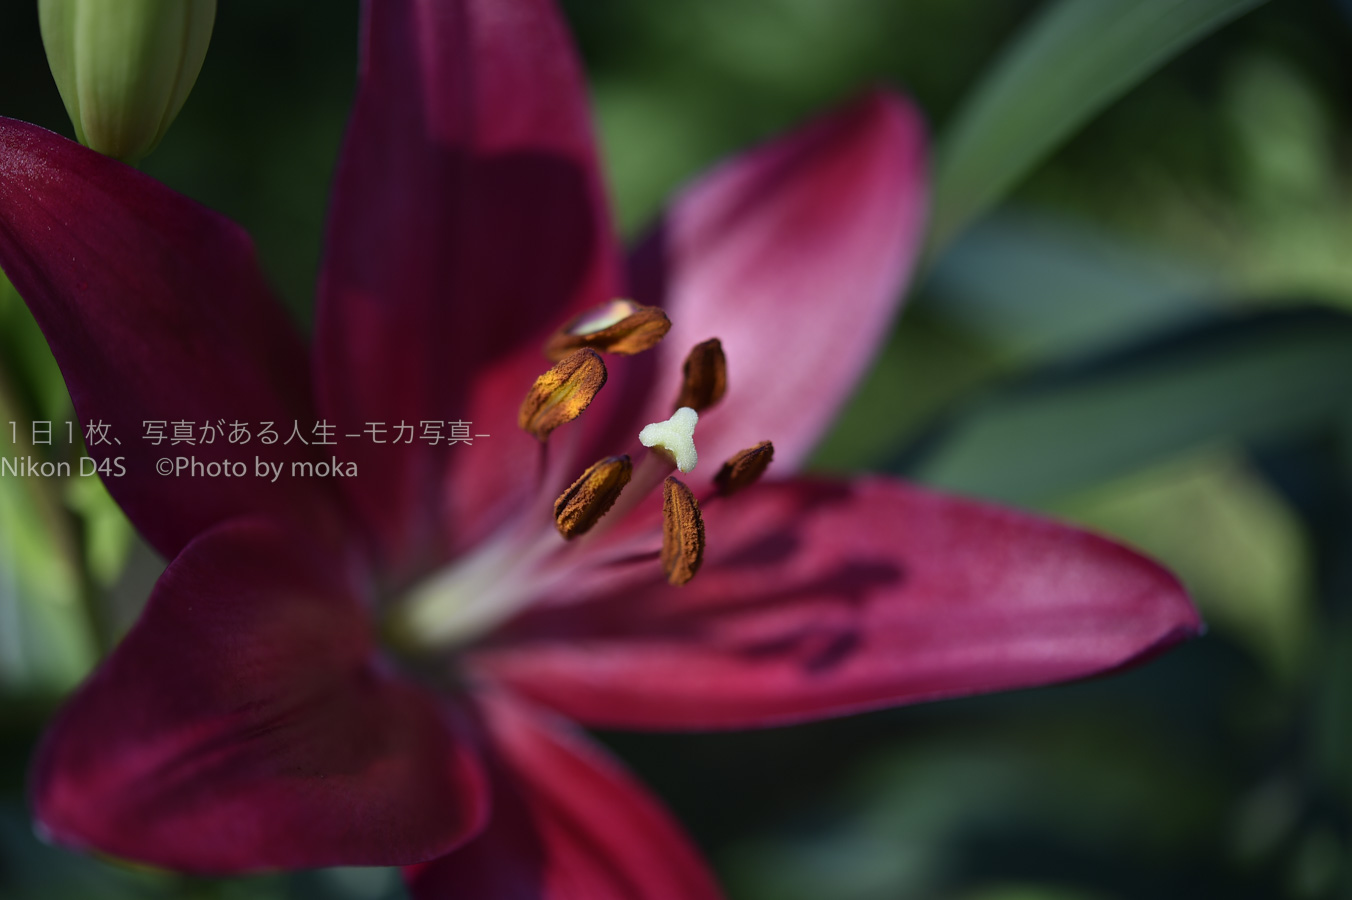 【スナップ撮影】歩く姿は百合の花